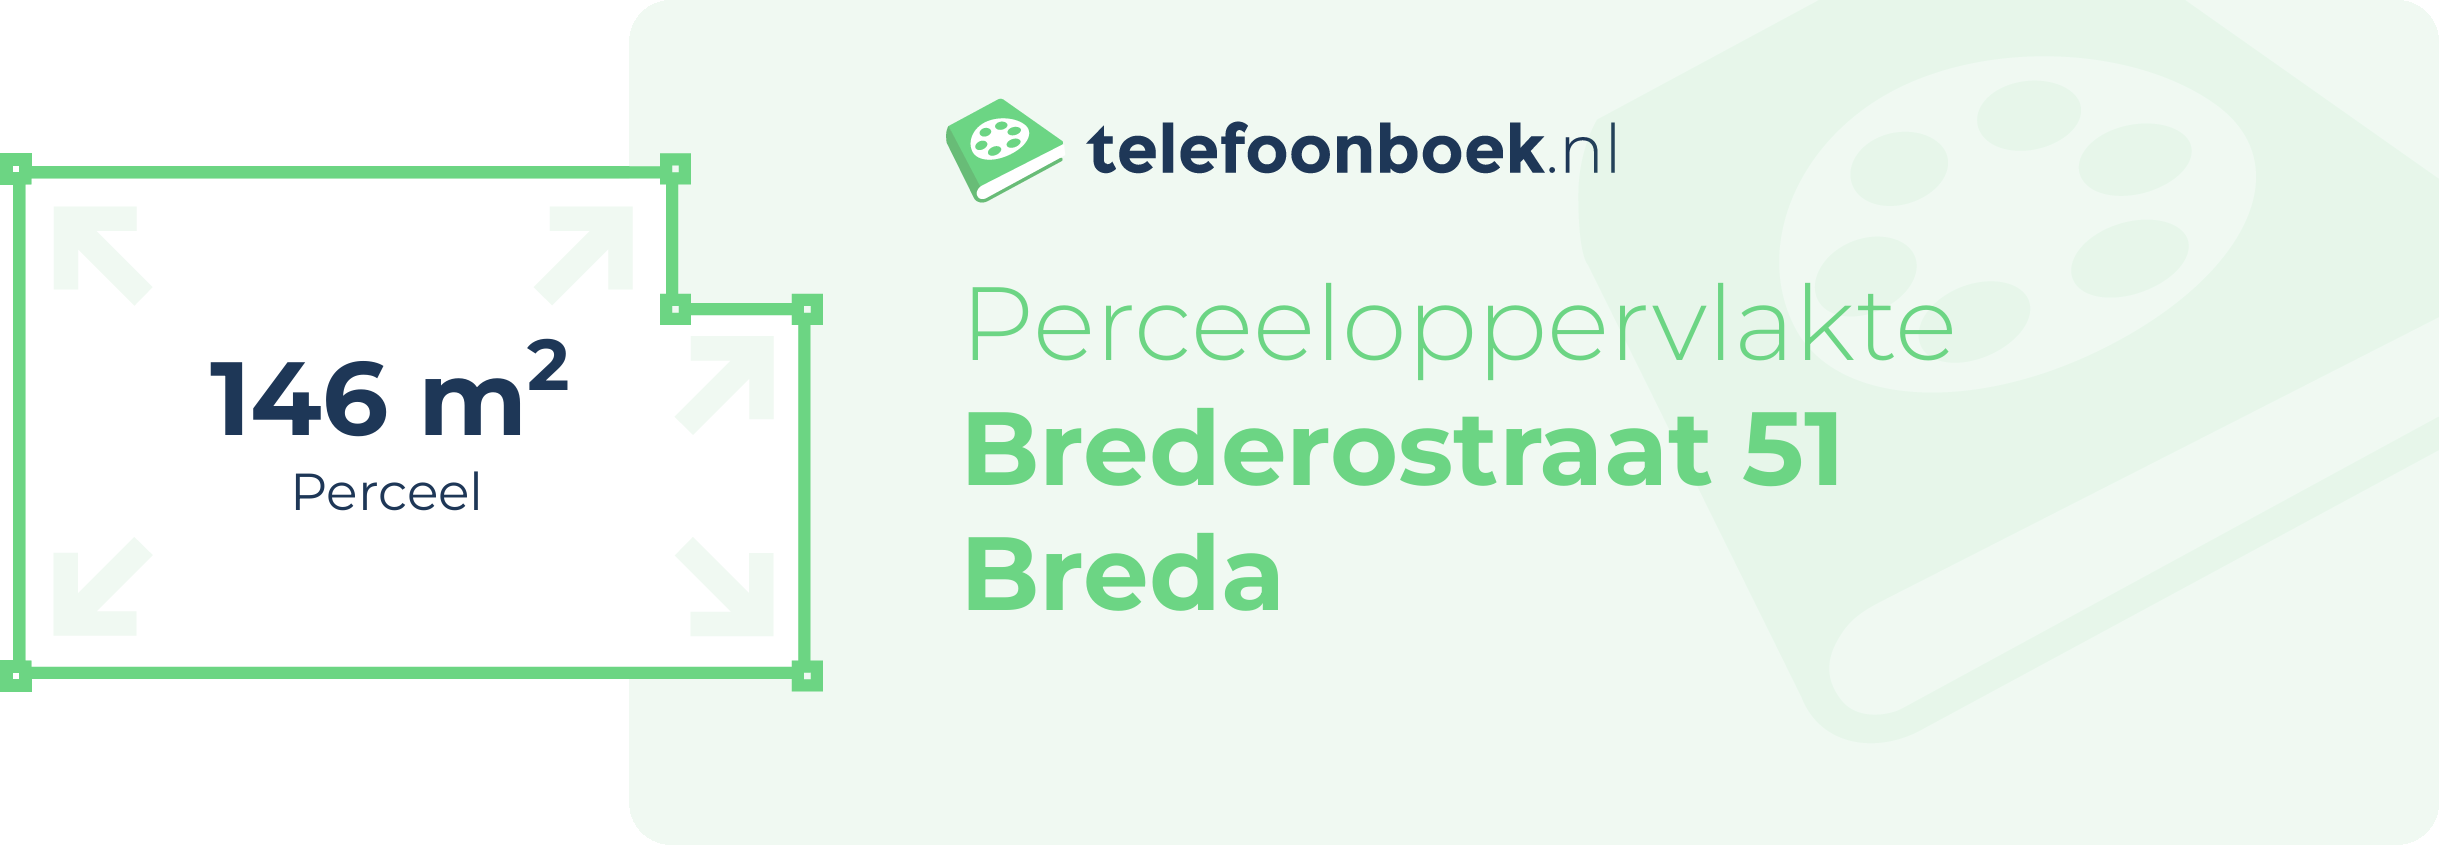 Perceeloppervlakte Brederostraat 51 Breda